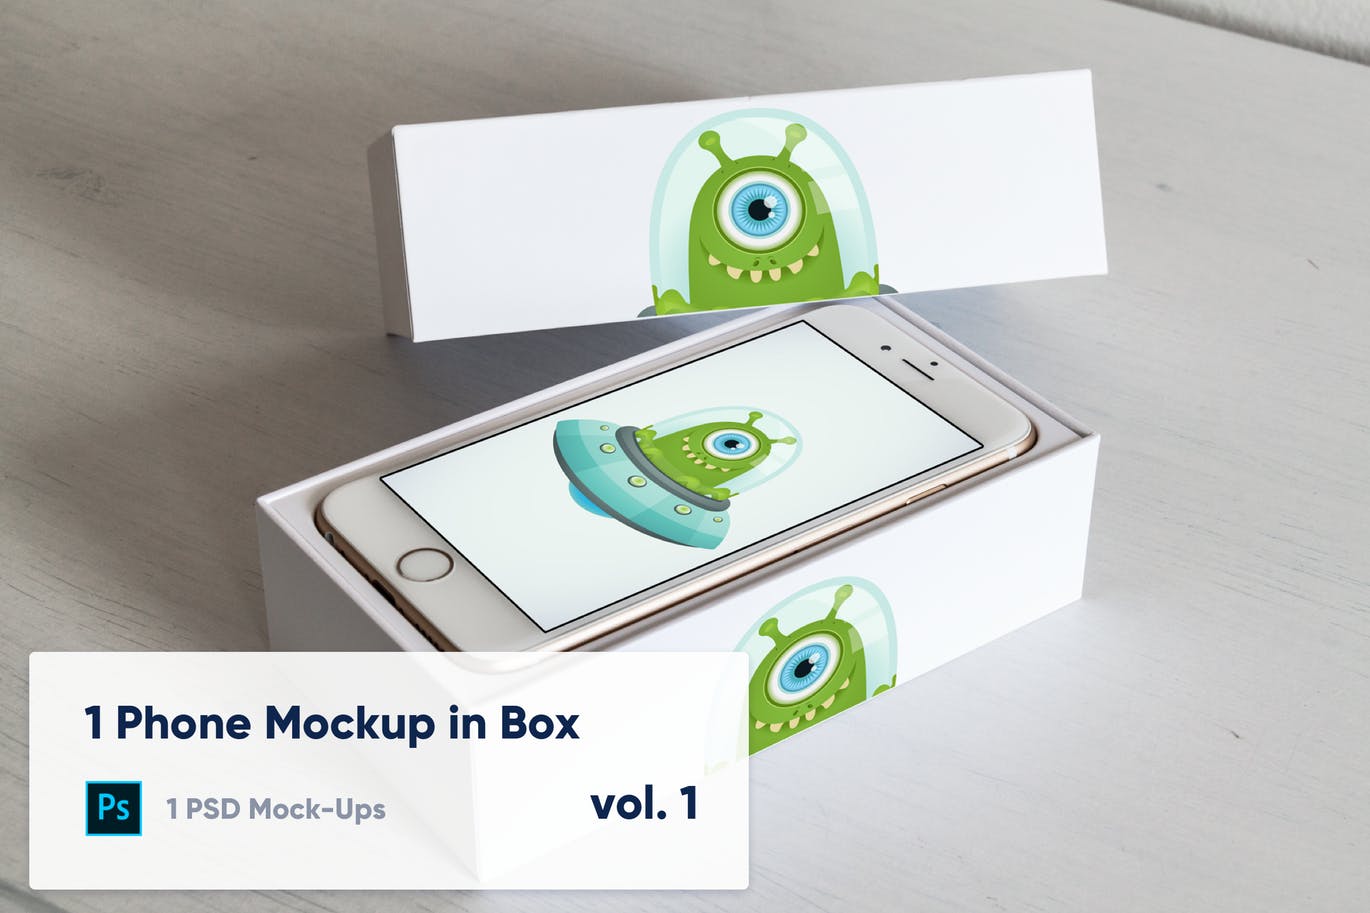 实体键盘iPhone手机开箱演示第一素材精选样机模板v1 1 Phone Mockup in Paper Box – Vol. 1插图